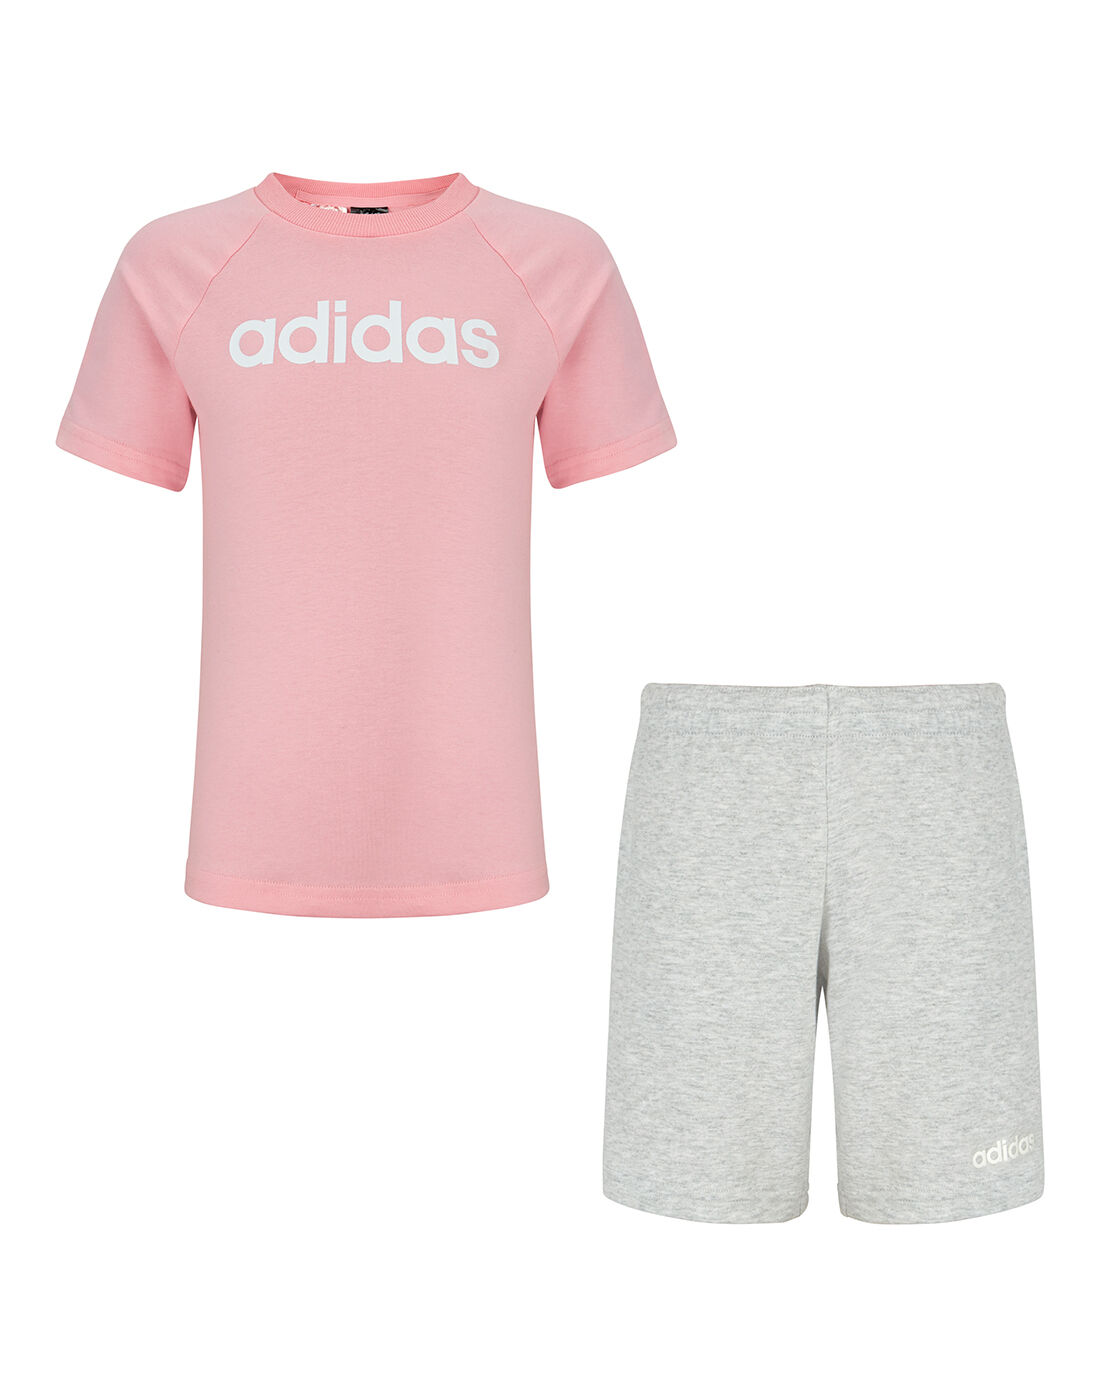 girls pink adidas shorts